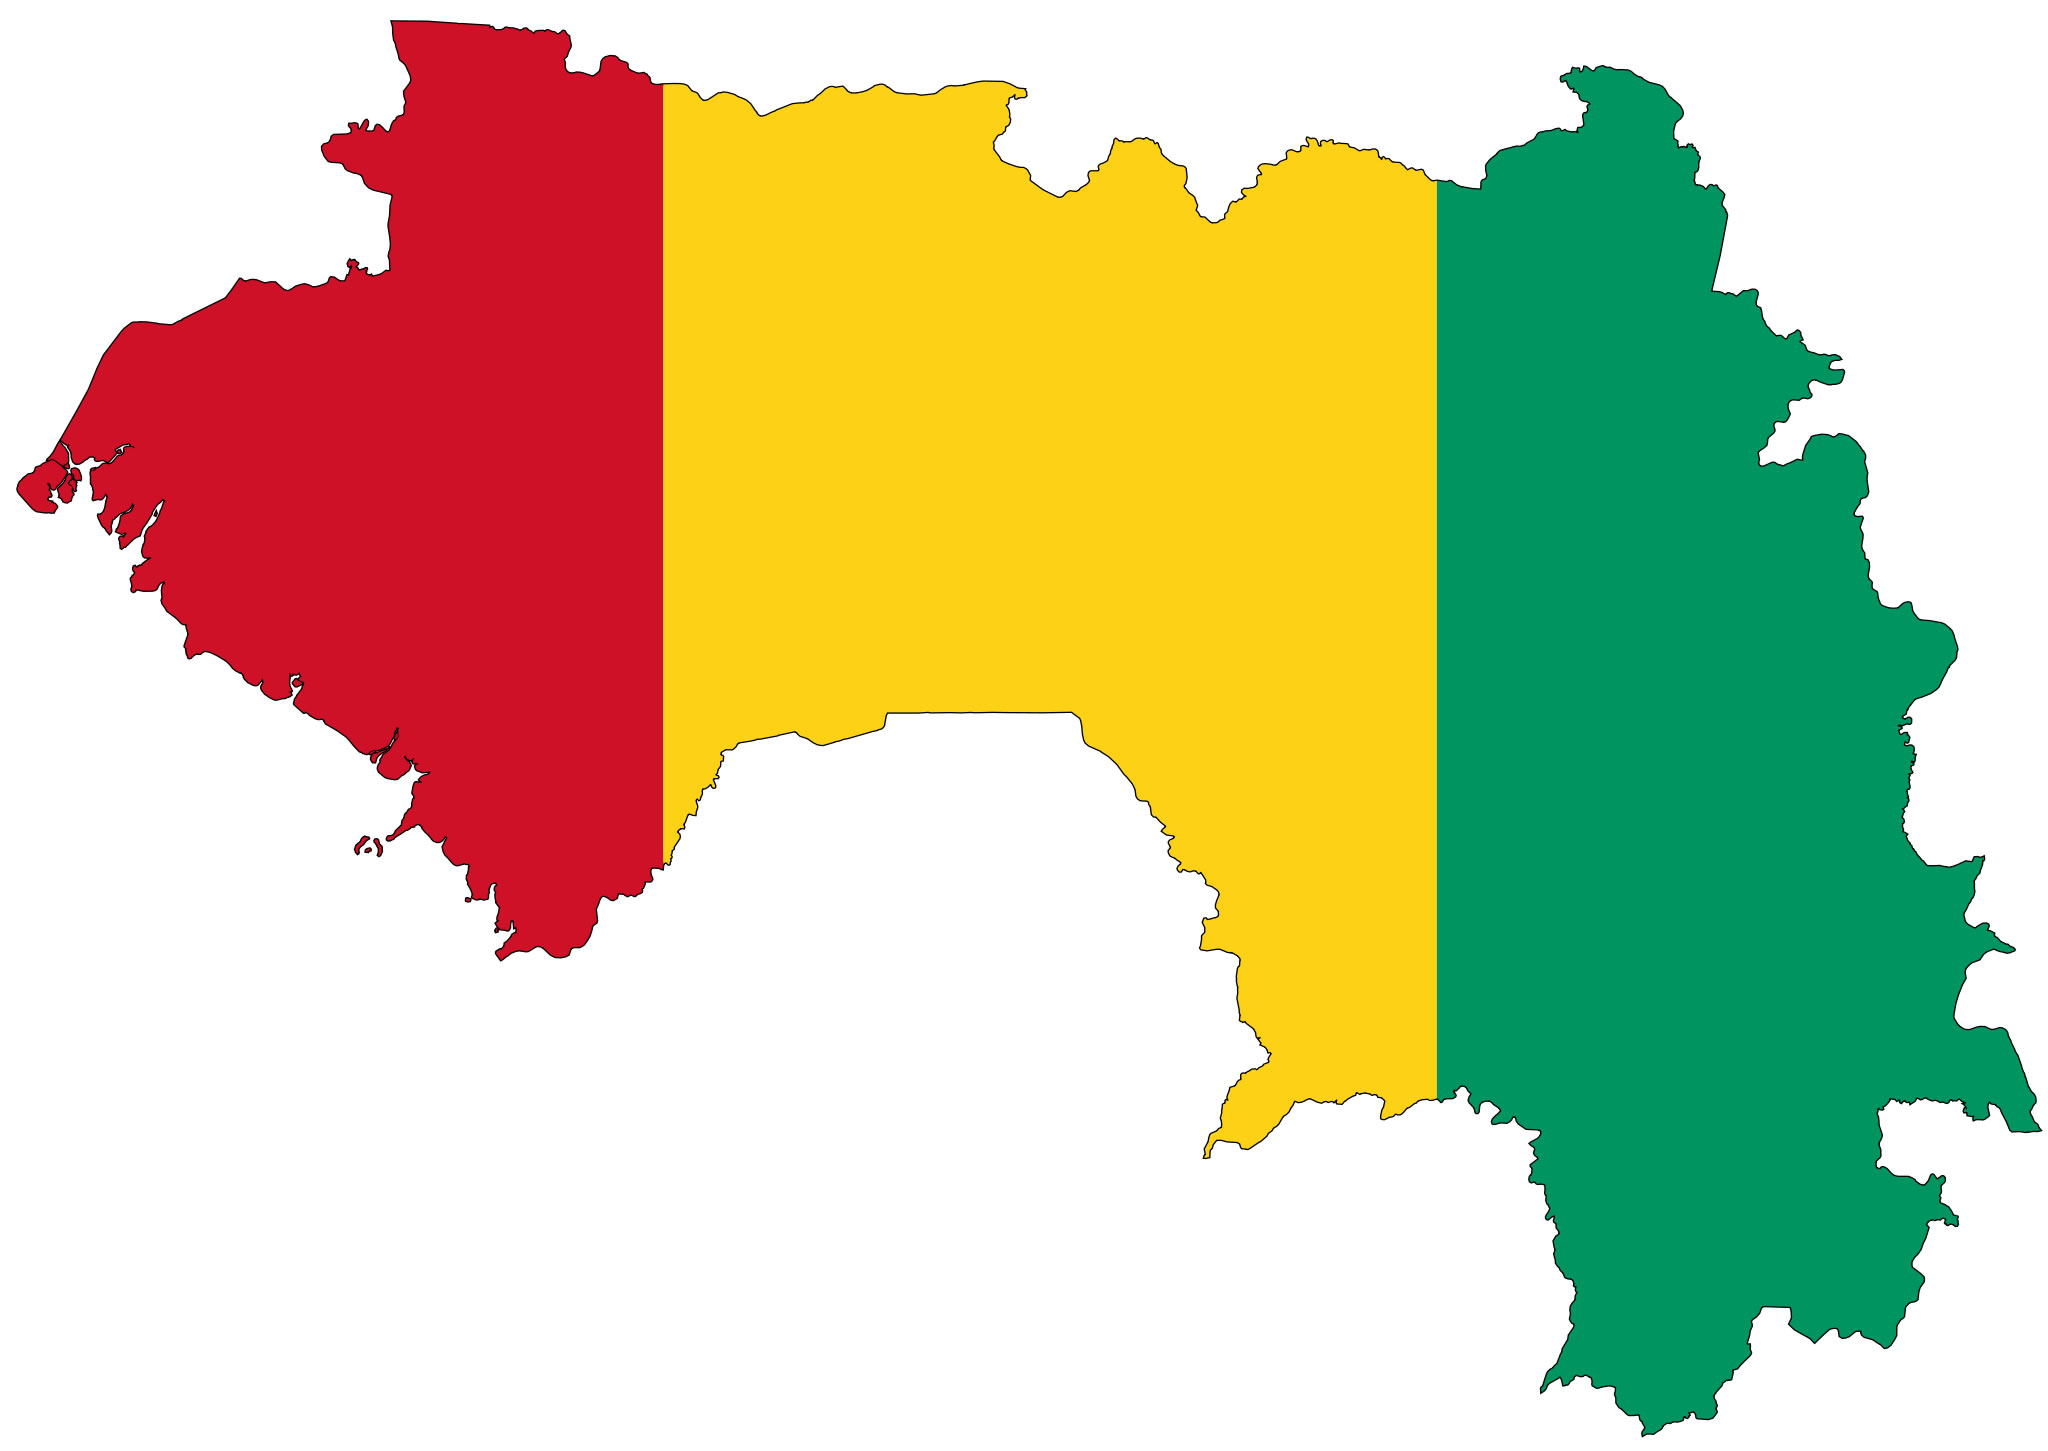 Résultat de recherche d'images pour "Guinée carte et drapeau"